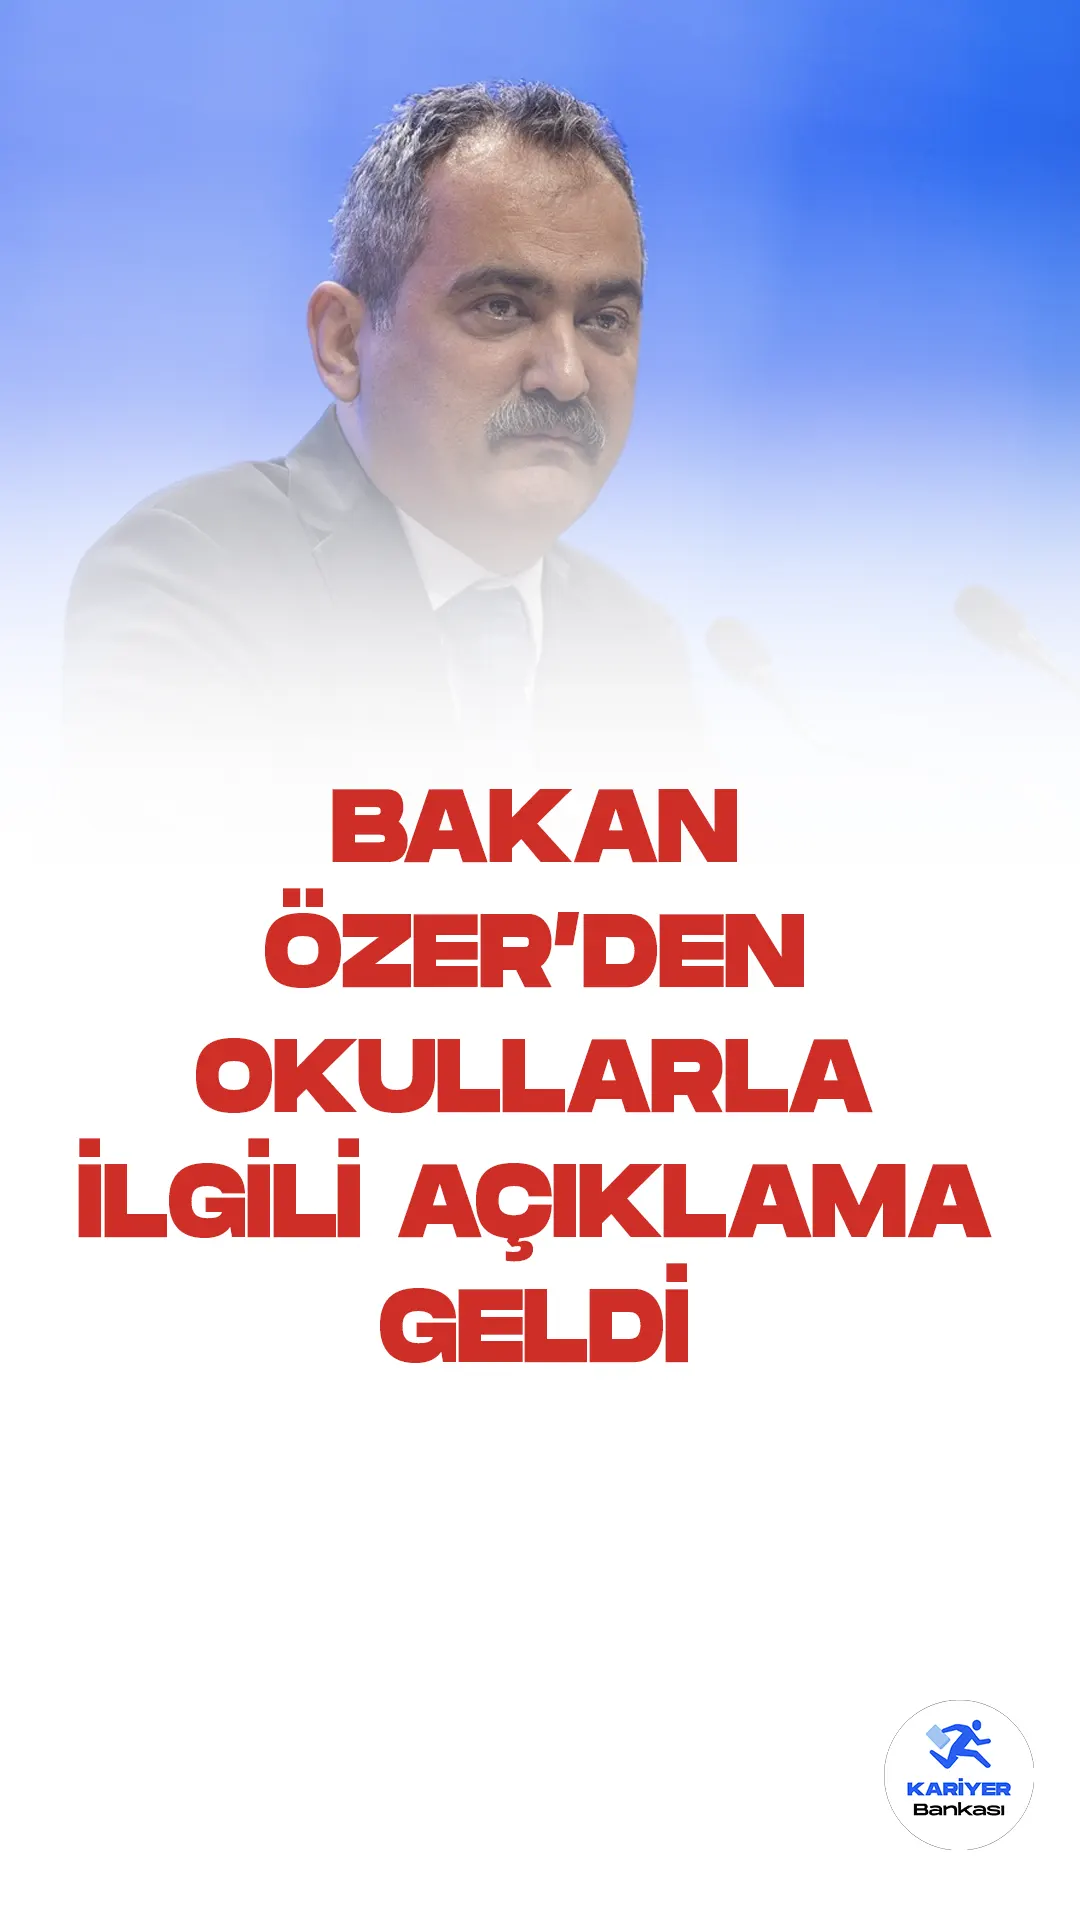 Milli Eğitim Bakanı Mahmut Özer, okullarla ilgili son dakika açıklamalarında bulundu. Bakan Özer, okulların uzatılmayacağını, 16 Haziran 2023 tarihinde sona ereceğini duyurdu.